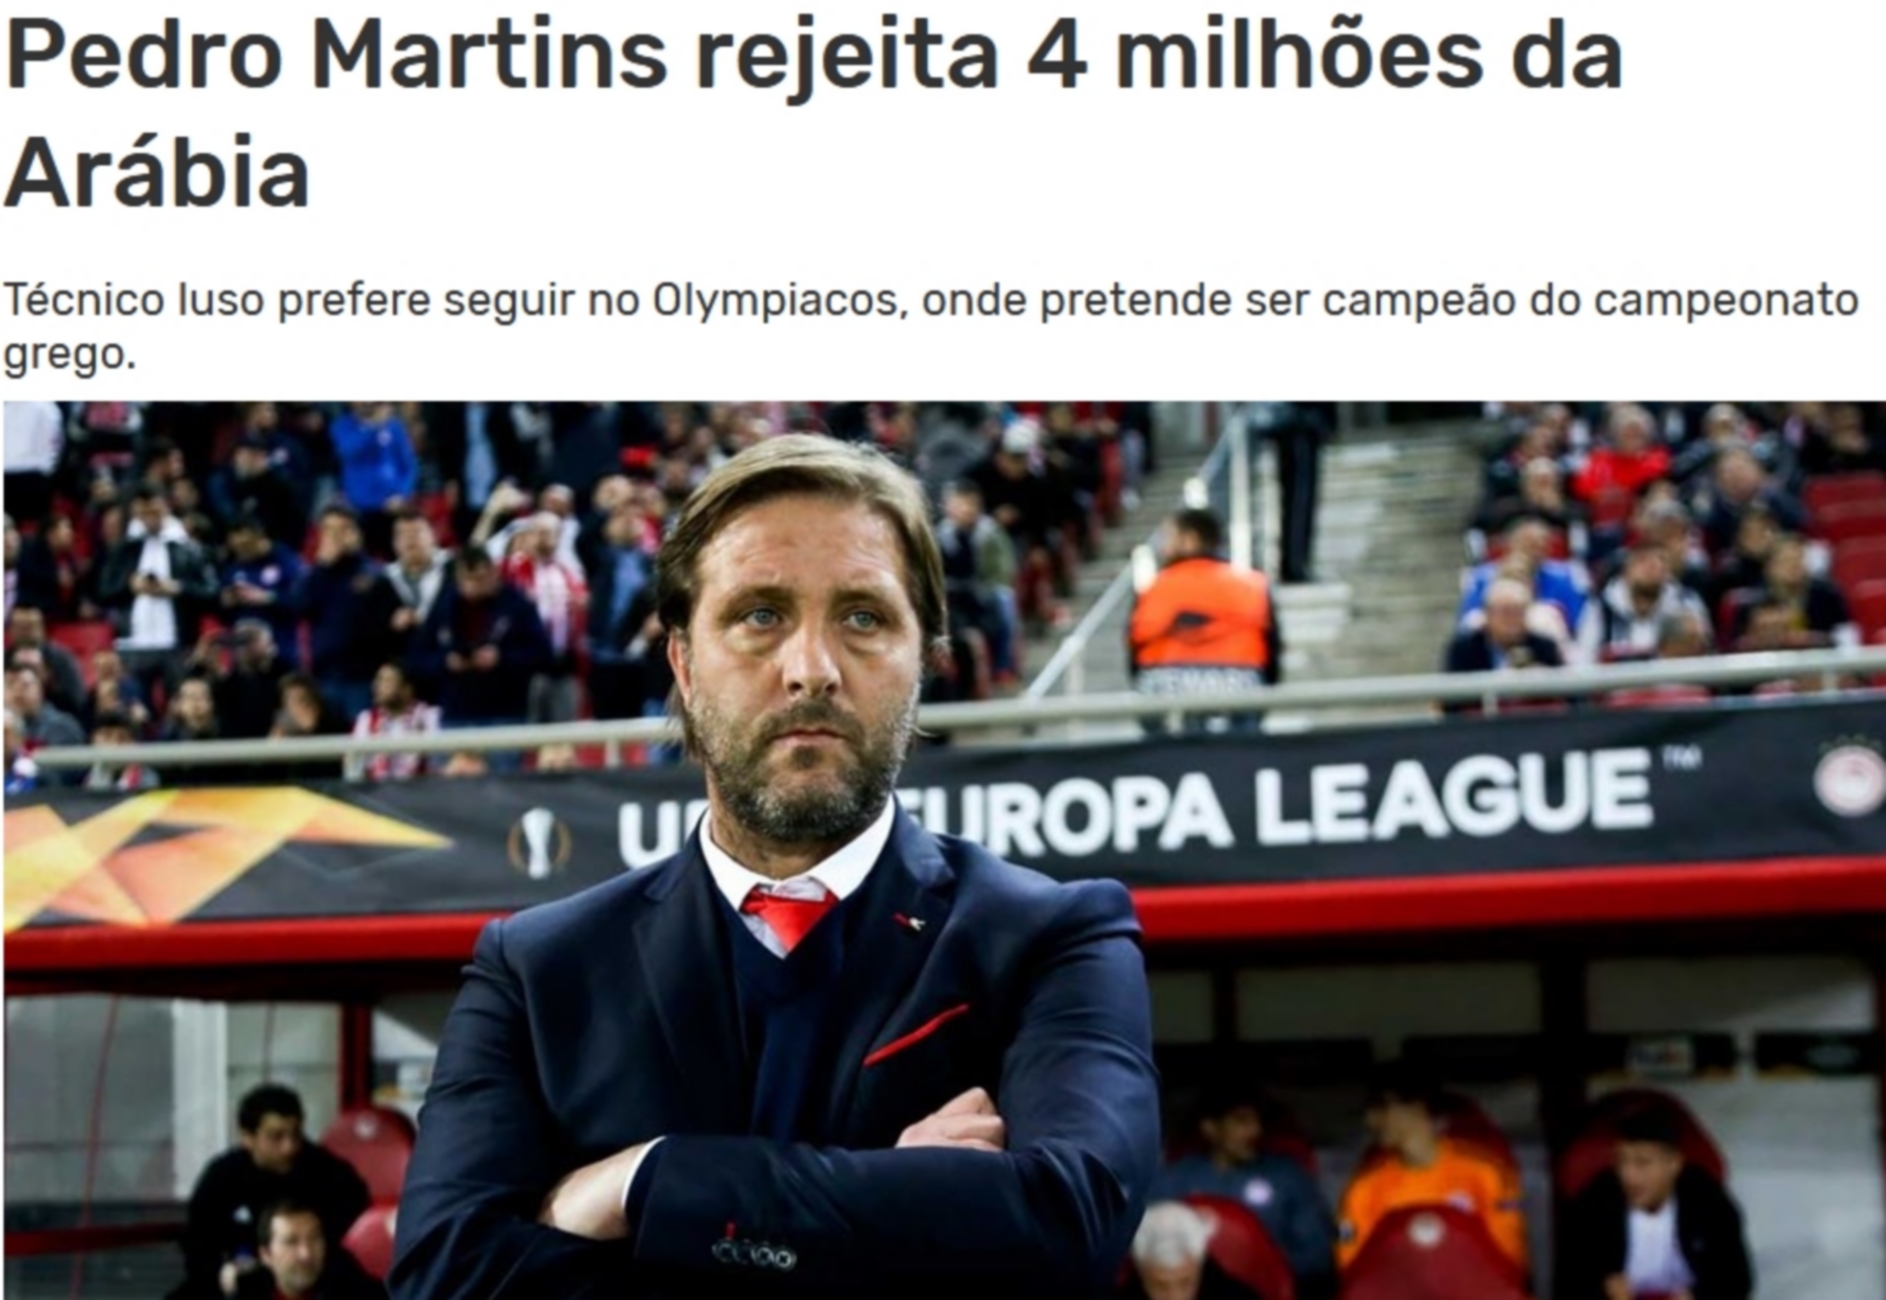 Ολυμπιακός: “Είπε όχι σε 4.000.000 ευρώ ο Μαρτίνς!”